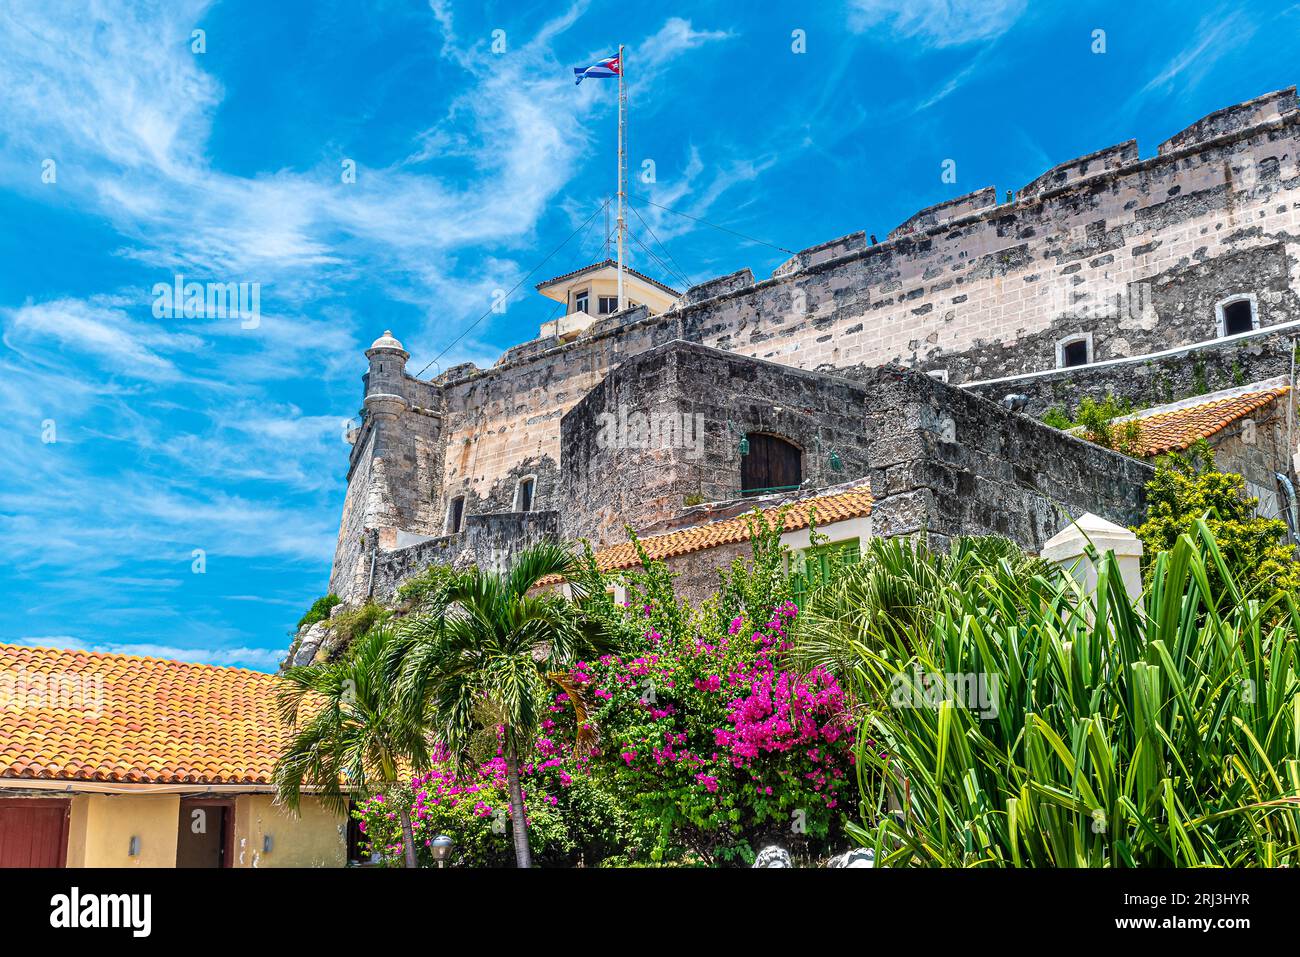 Kuba Havanna. Befestigungsanlagen des alten Havanna. Die attraktive geographische Lage Kubas, das in der Kolonialzeit die „Perle der Antillen“ genannt wurde Stockfoto